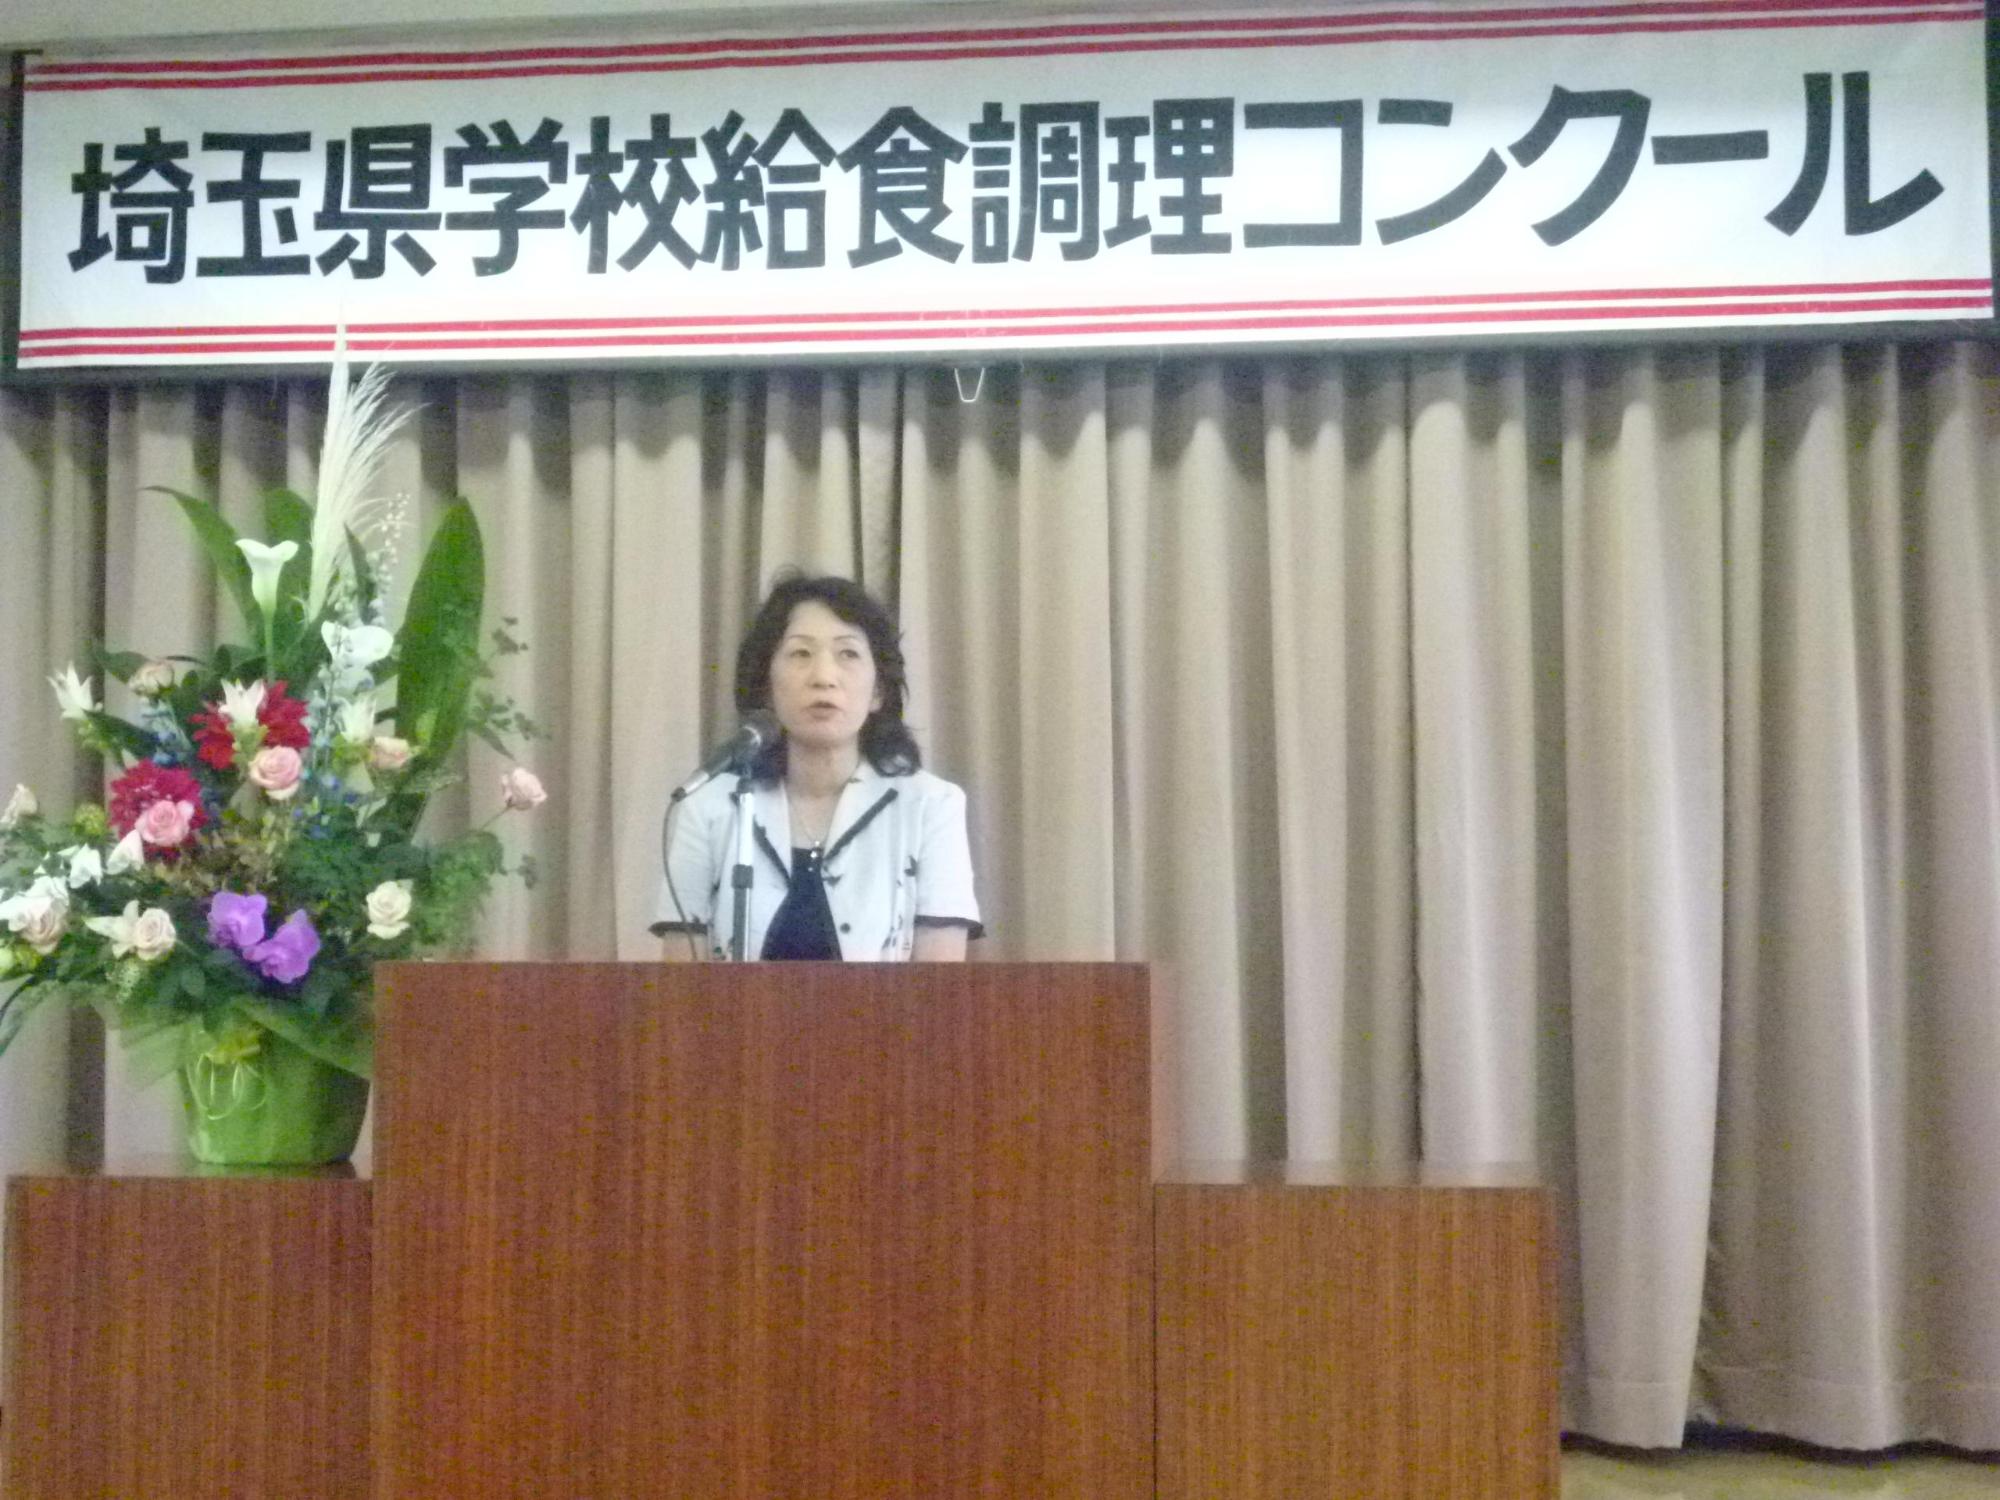 埼玉県学校給食調理コンクールの壇上に立ち話をする女性の写真